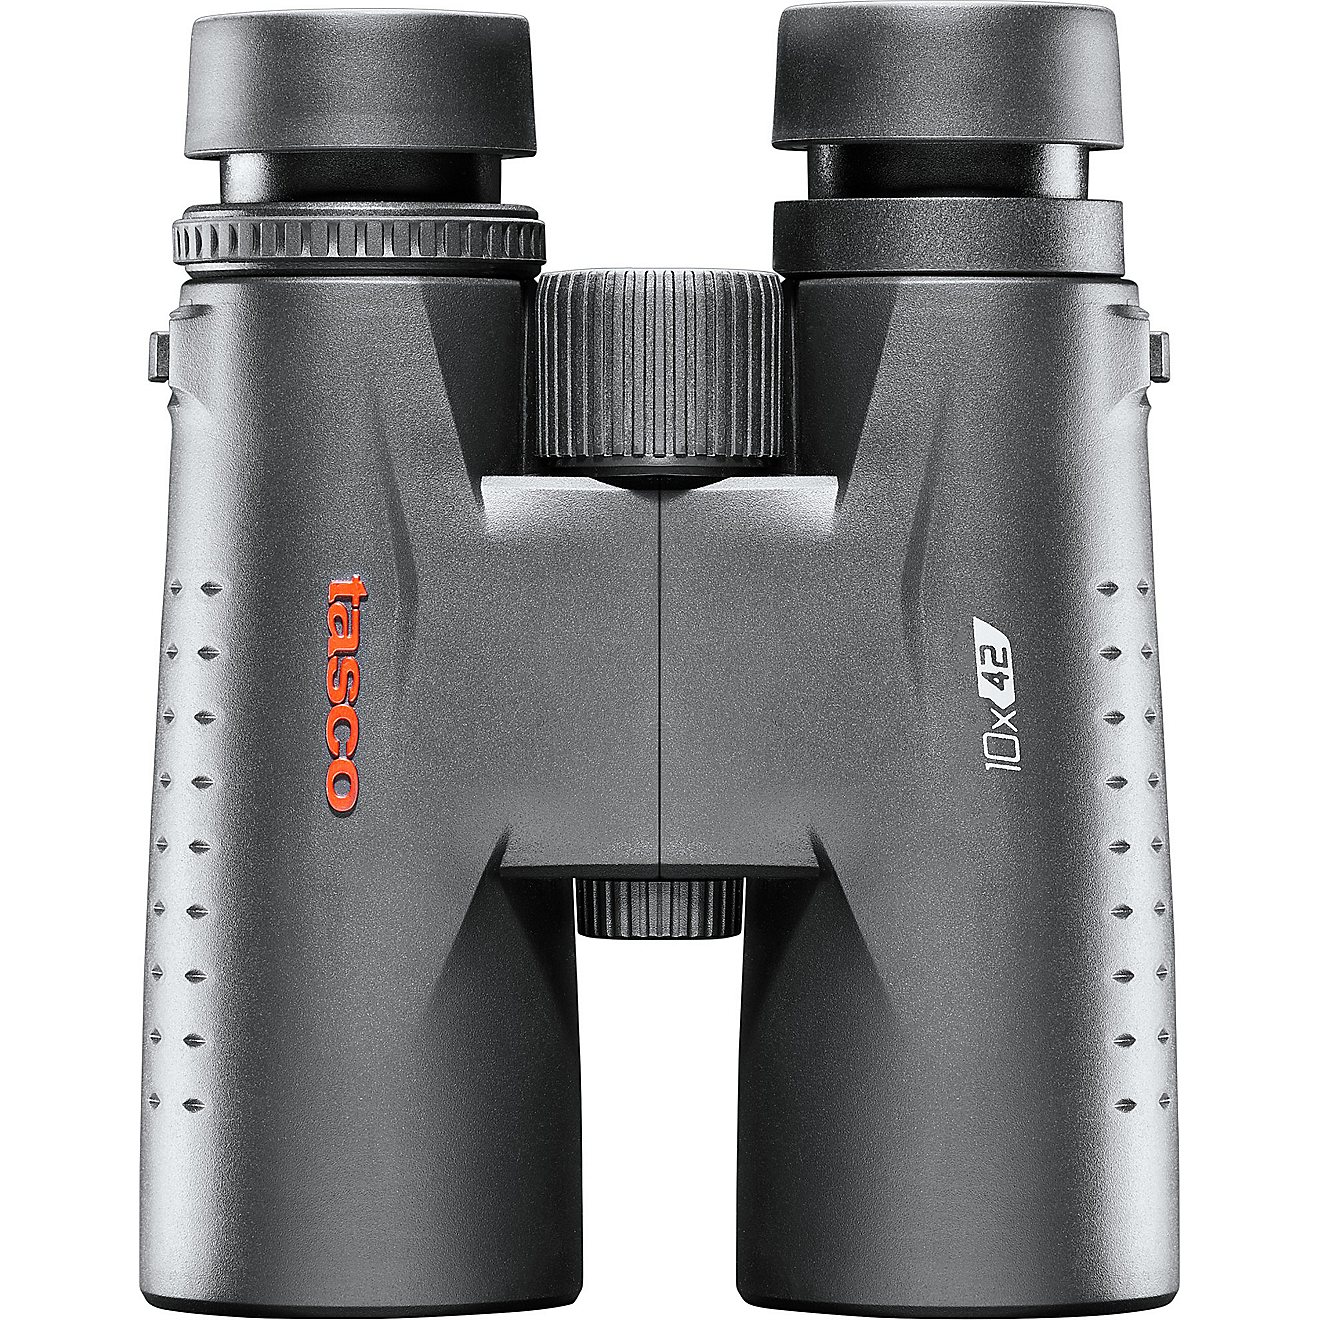 Tasco 10 x 42 Essential Binoculars                                                                                               - view number 3